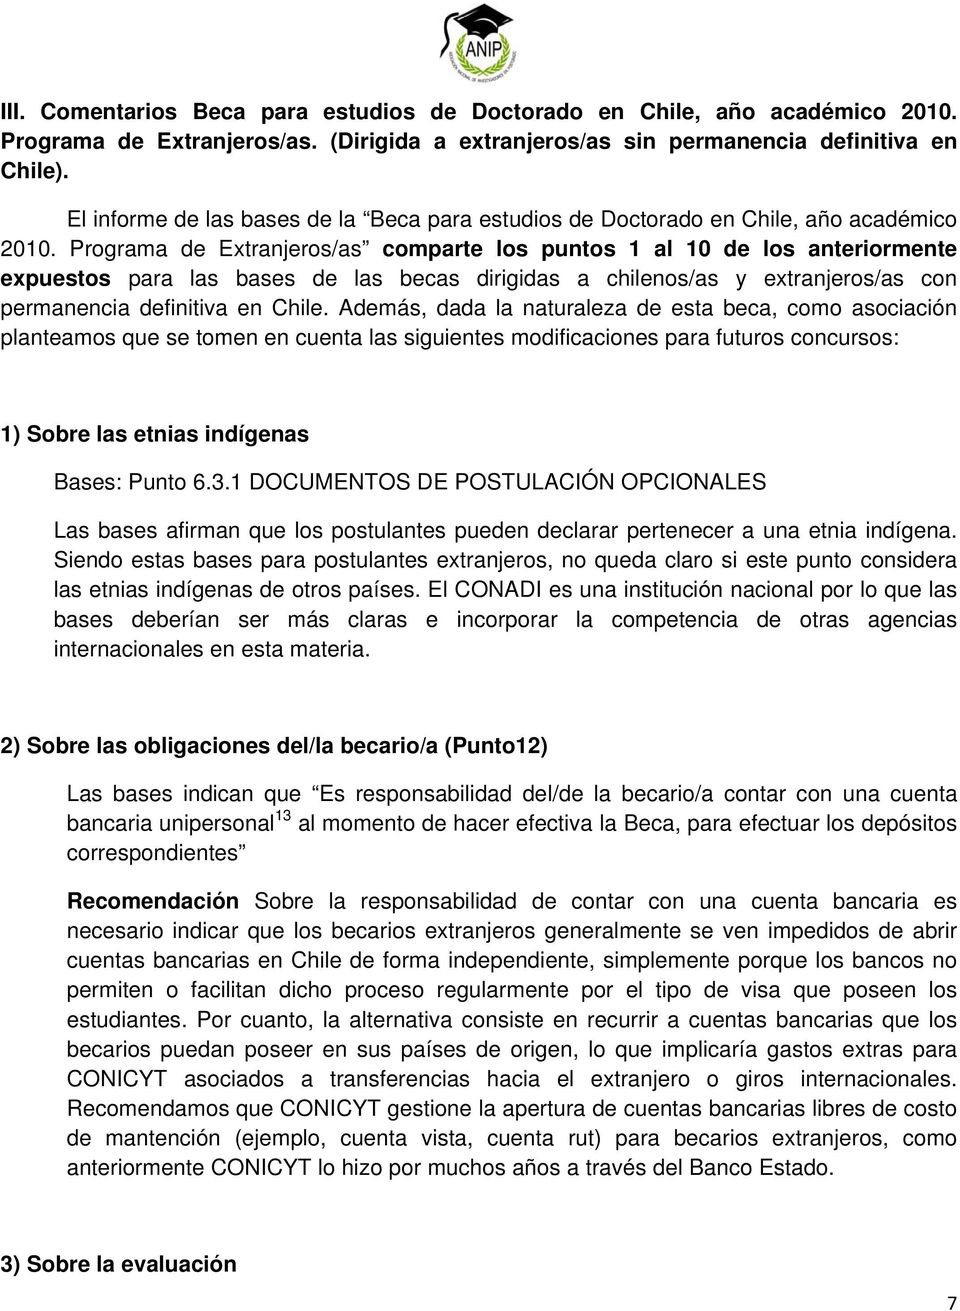 Programa de Extranjeros/as comparte los puntos 1 al 10 de los anteriormente expuestos para las bases de las becas dirigidas a chilenos/as y extranjeros/as con permanencia definitiva en Chile.